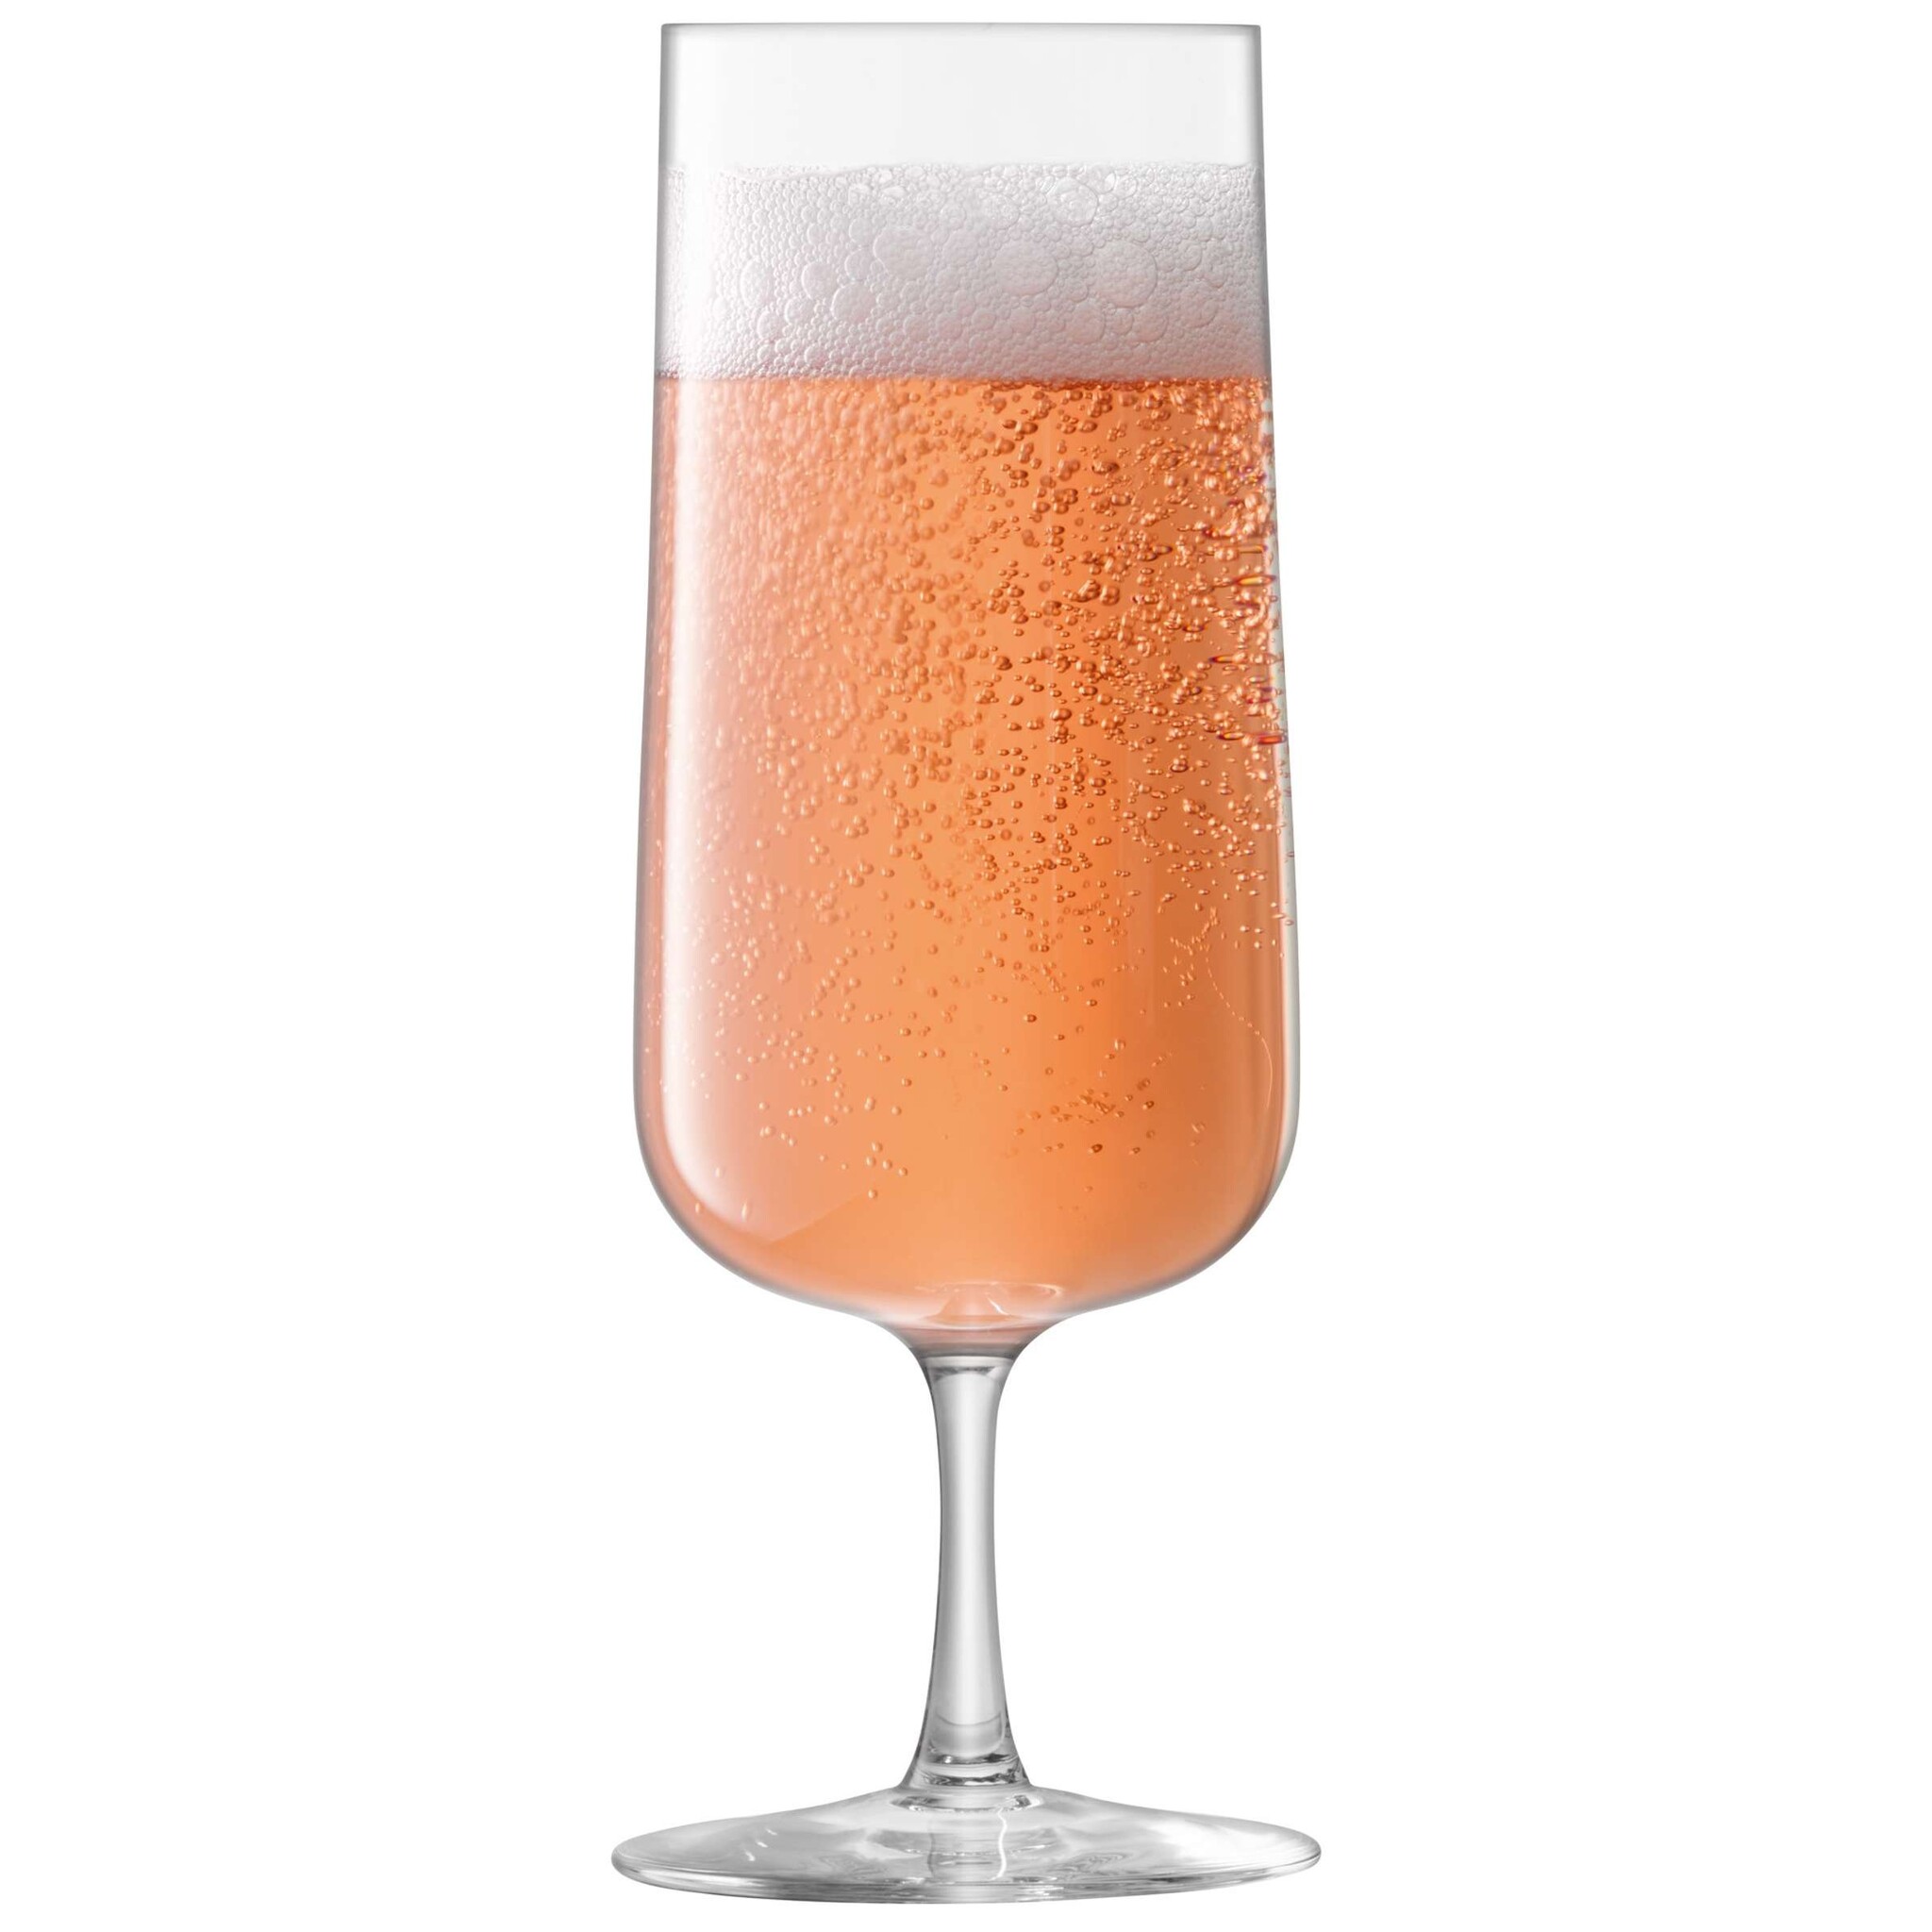 L.S.A. Arc Champagneglas 240 ml Set van 4 Stuks